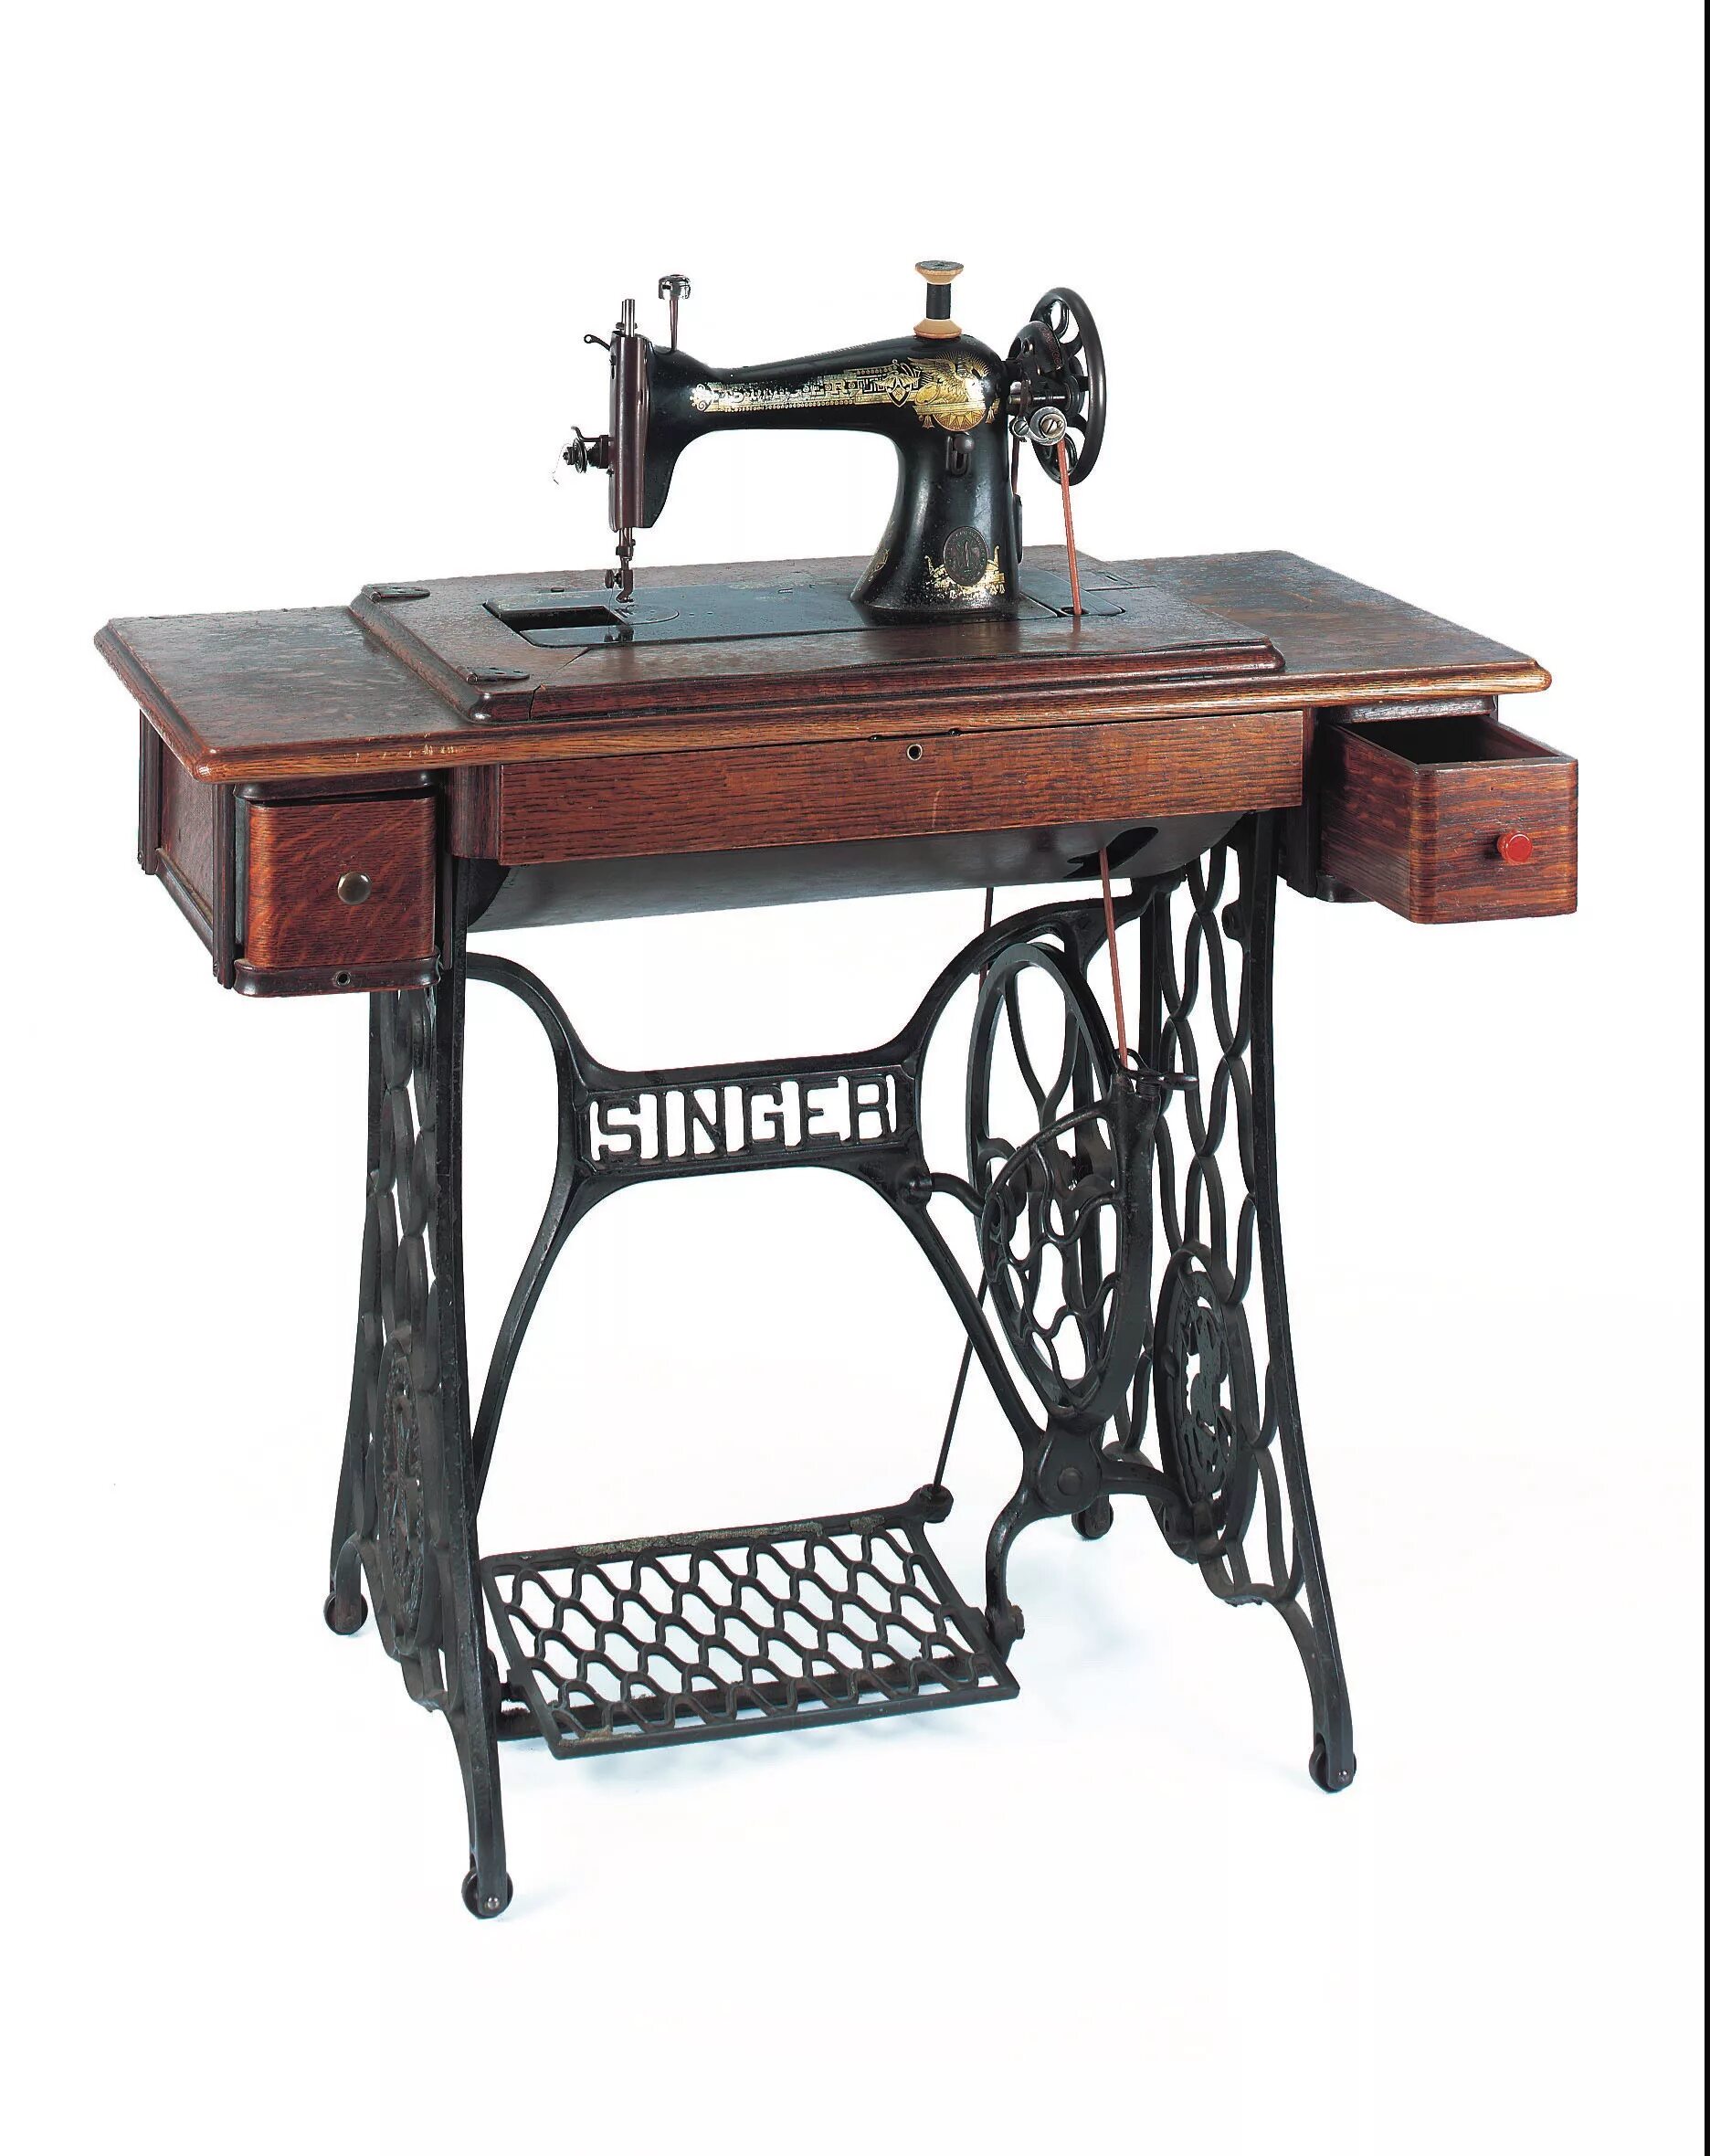 Швейная машинка 2250. Швейная машинка Зингер ретро. Швейная машинка Зингер 18 века. Швейная машинка Зингер 2250.